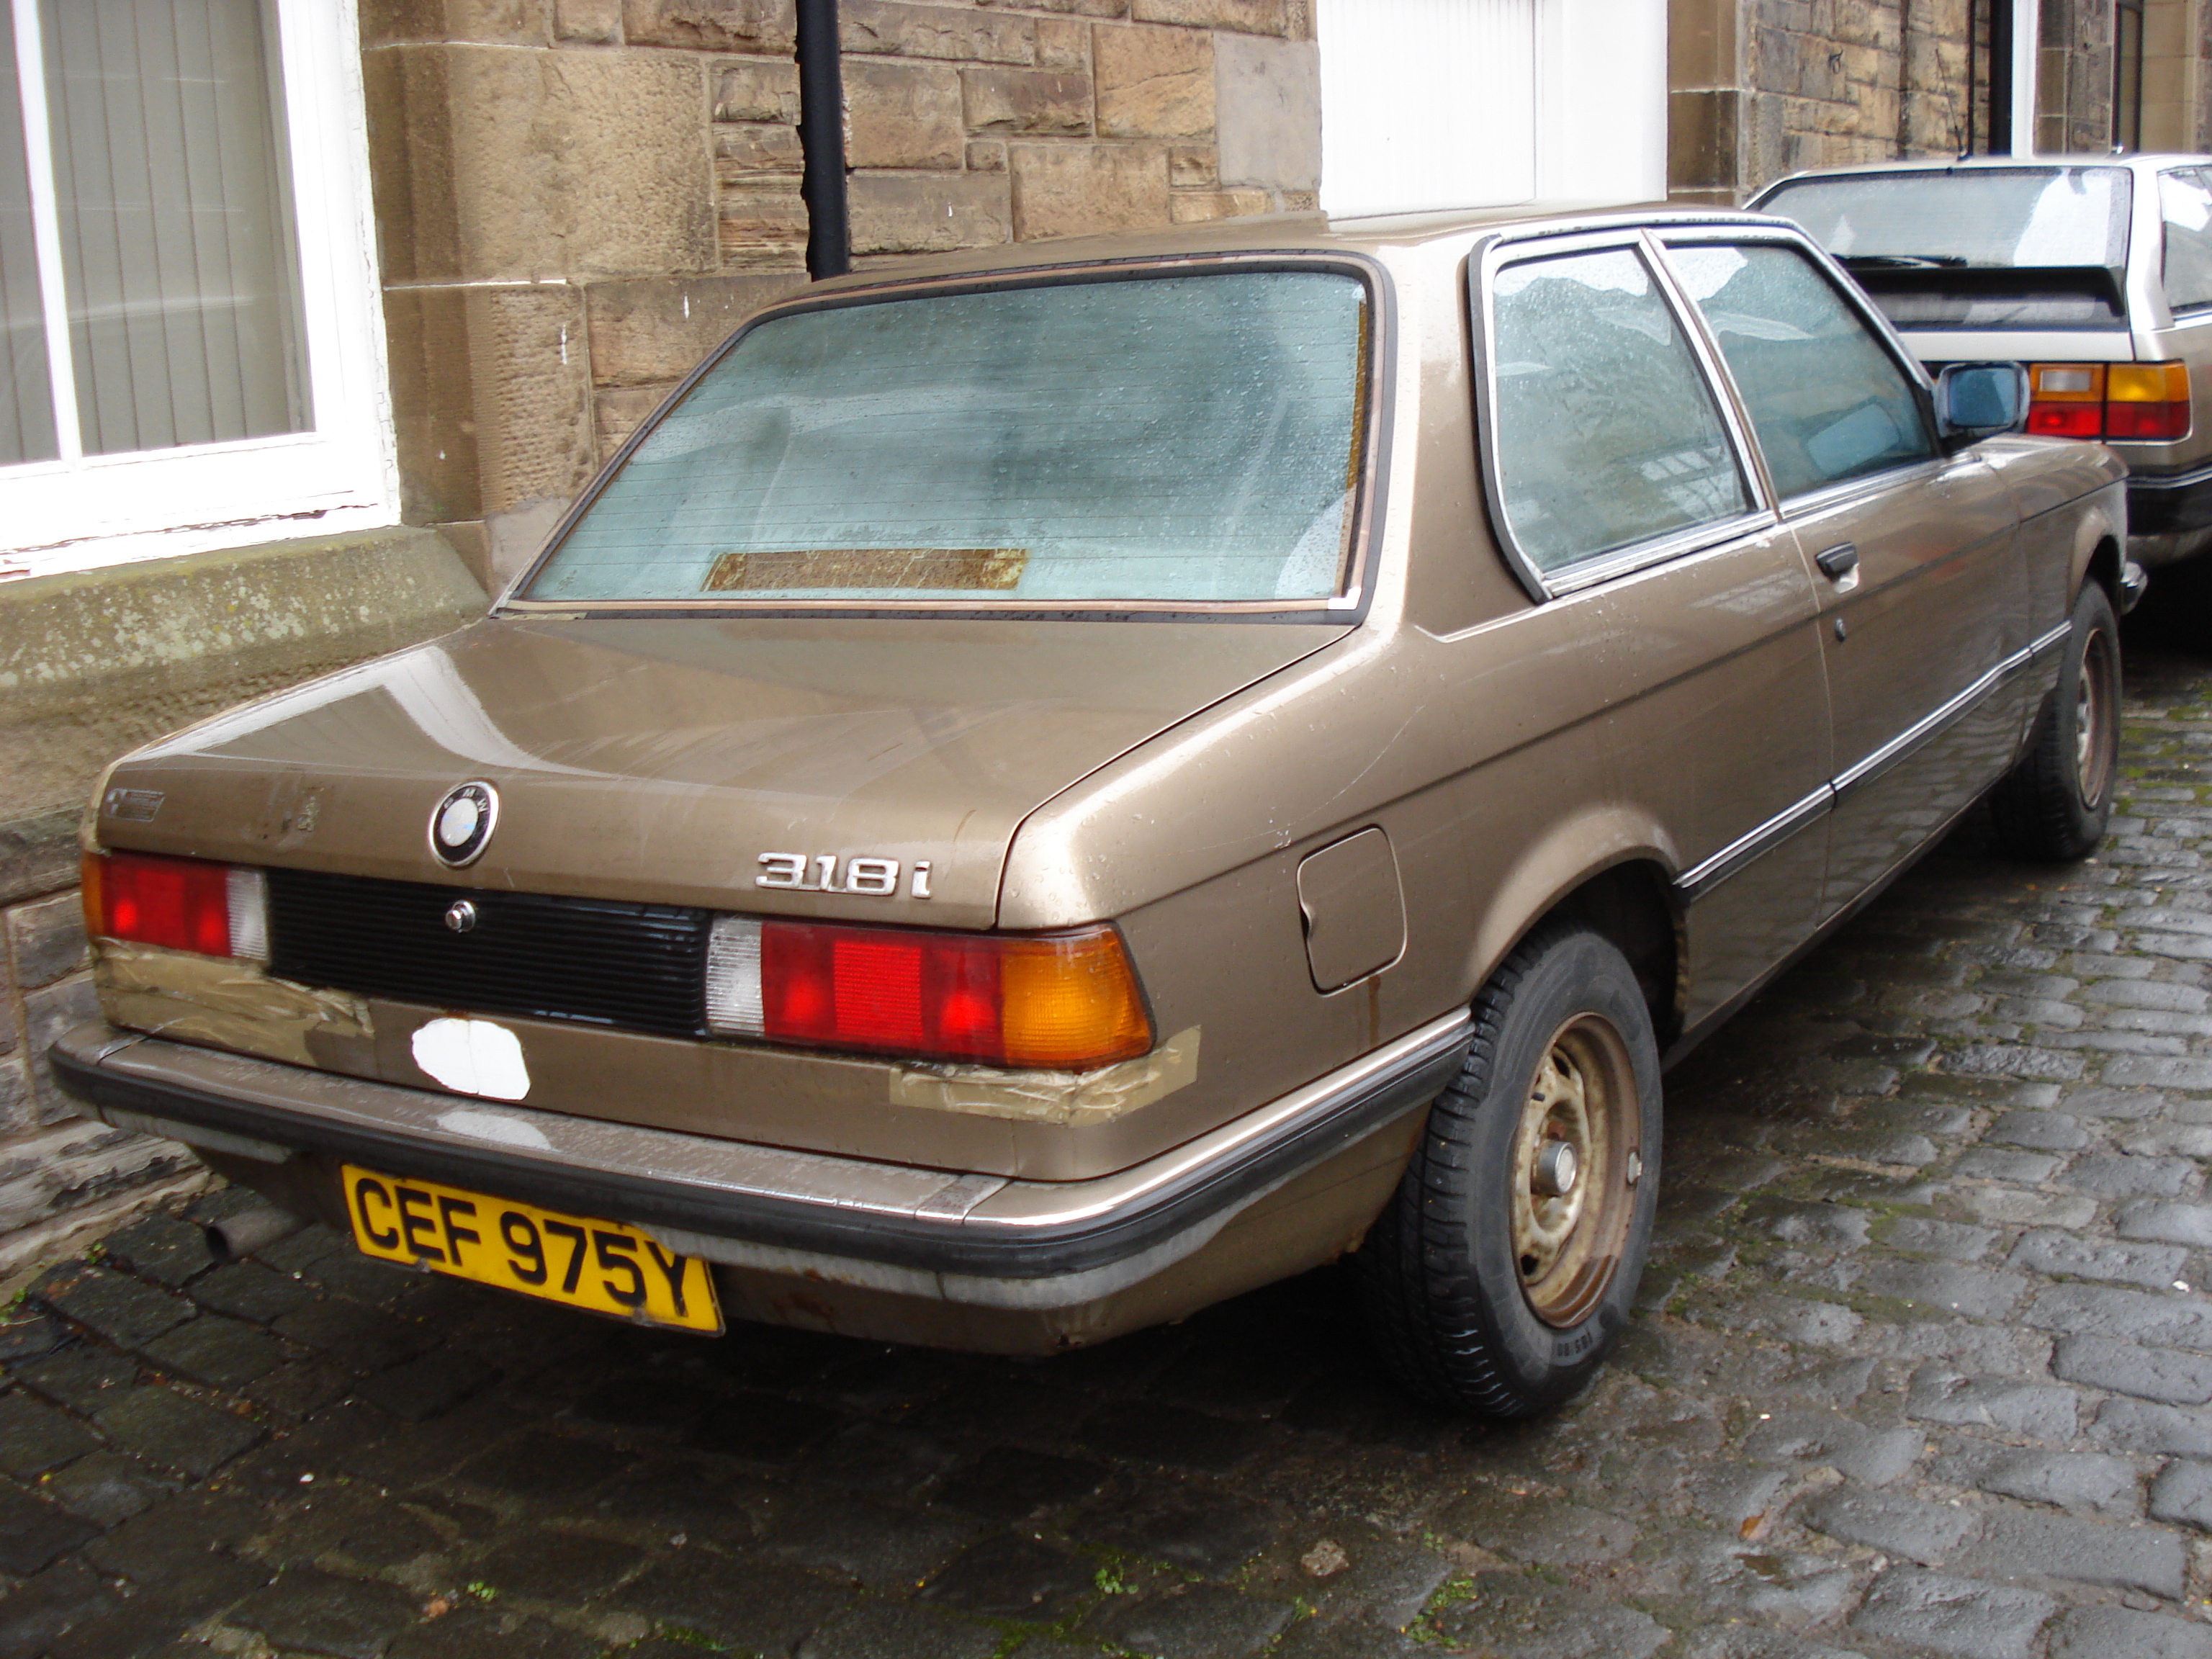 BMW 318i 1983 / Flickr - Partage de photos!